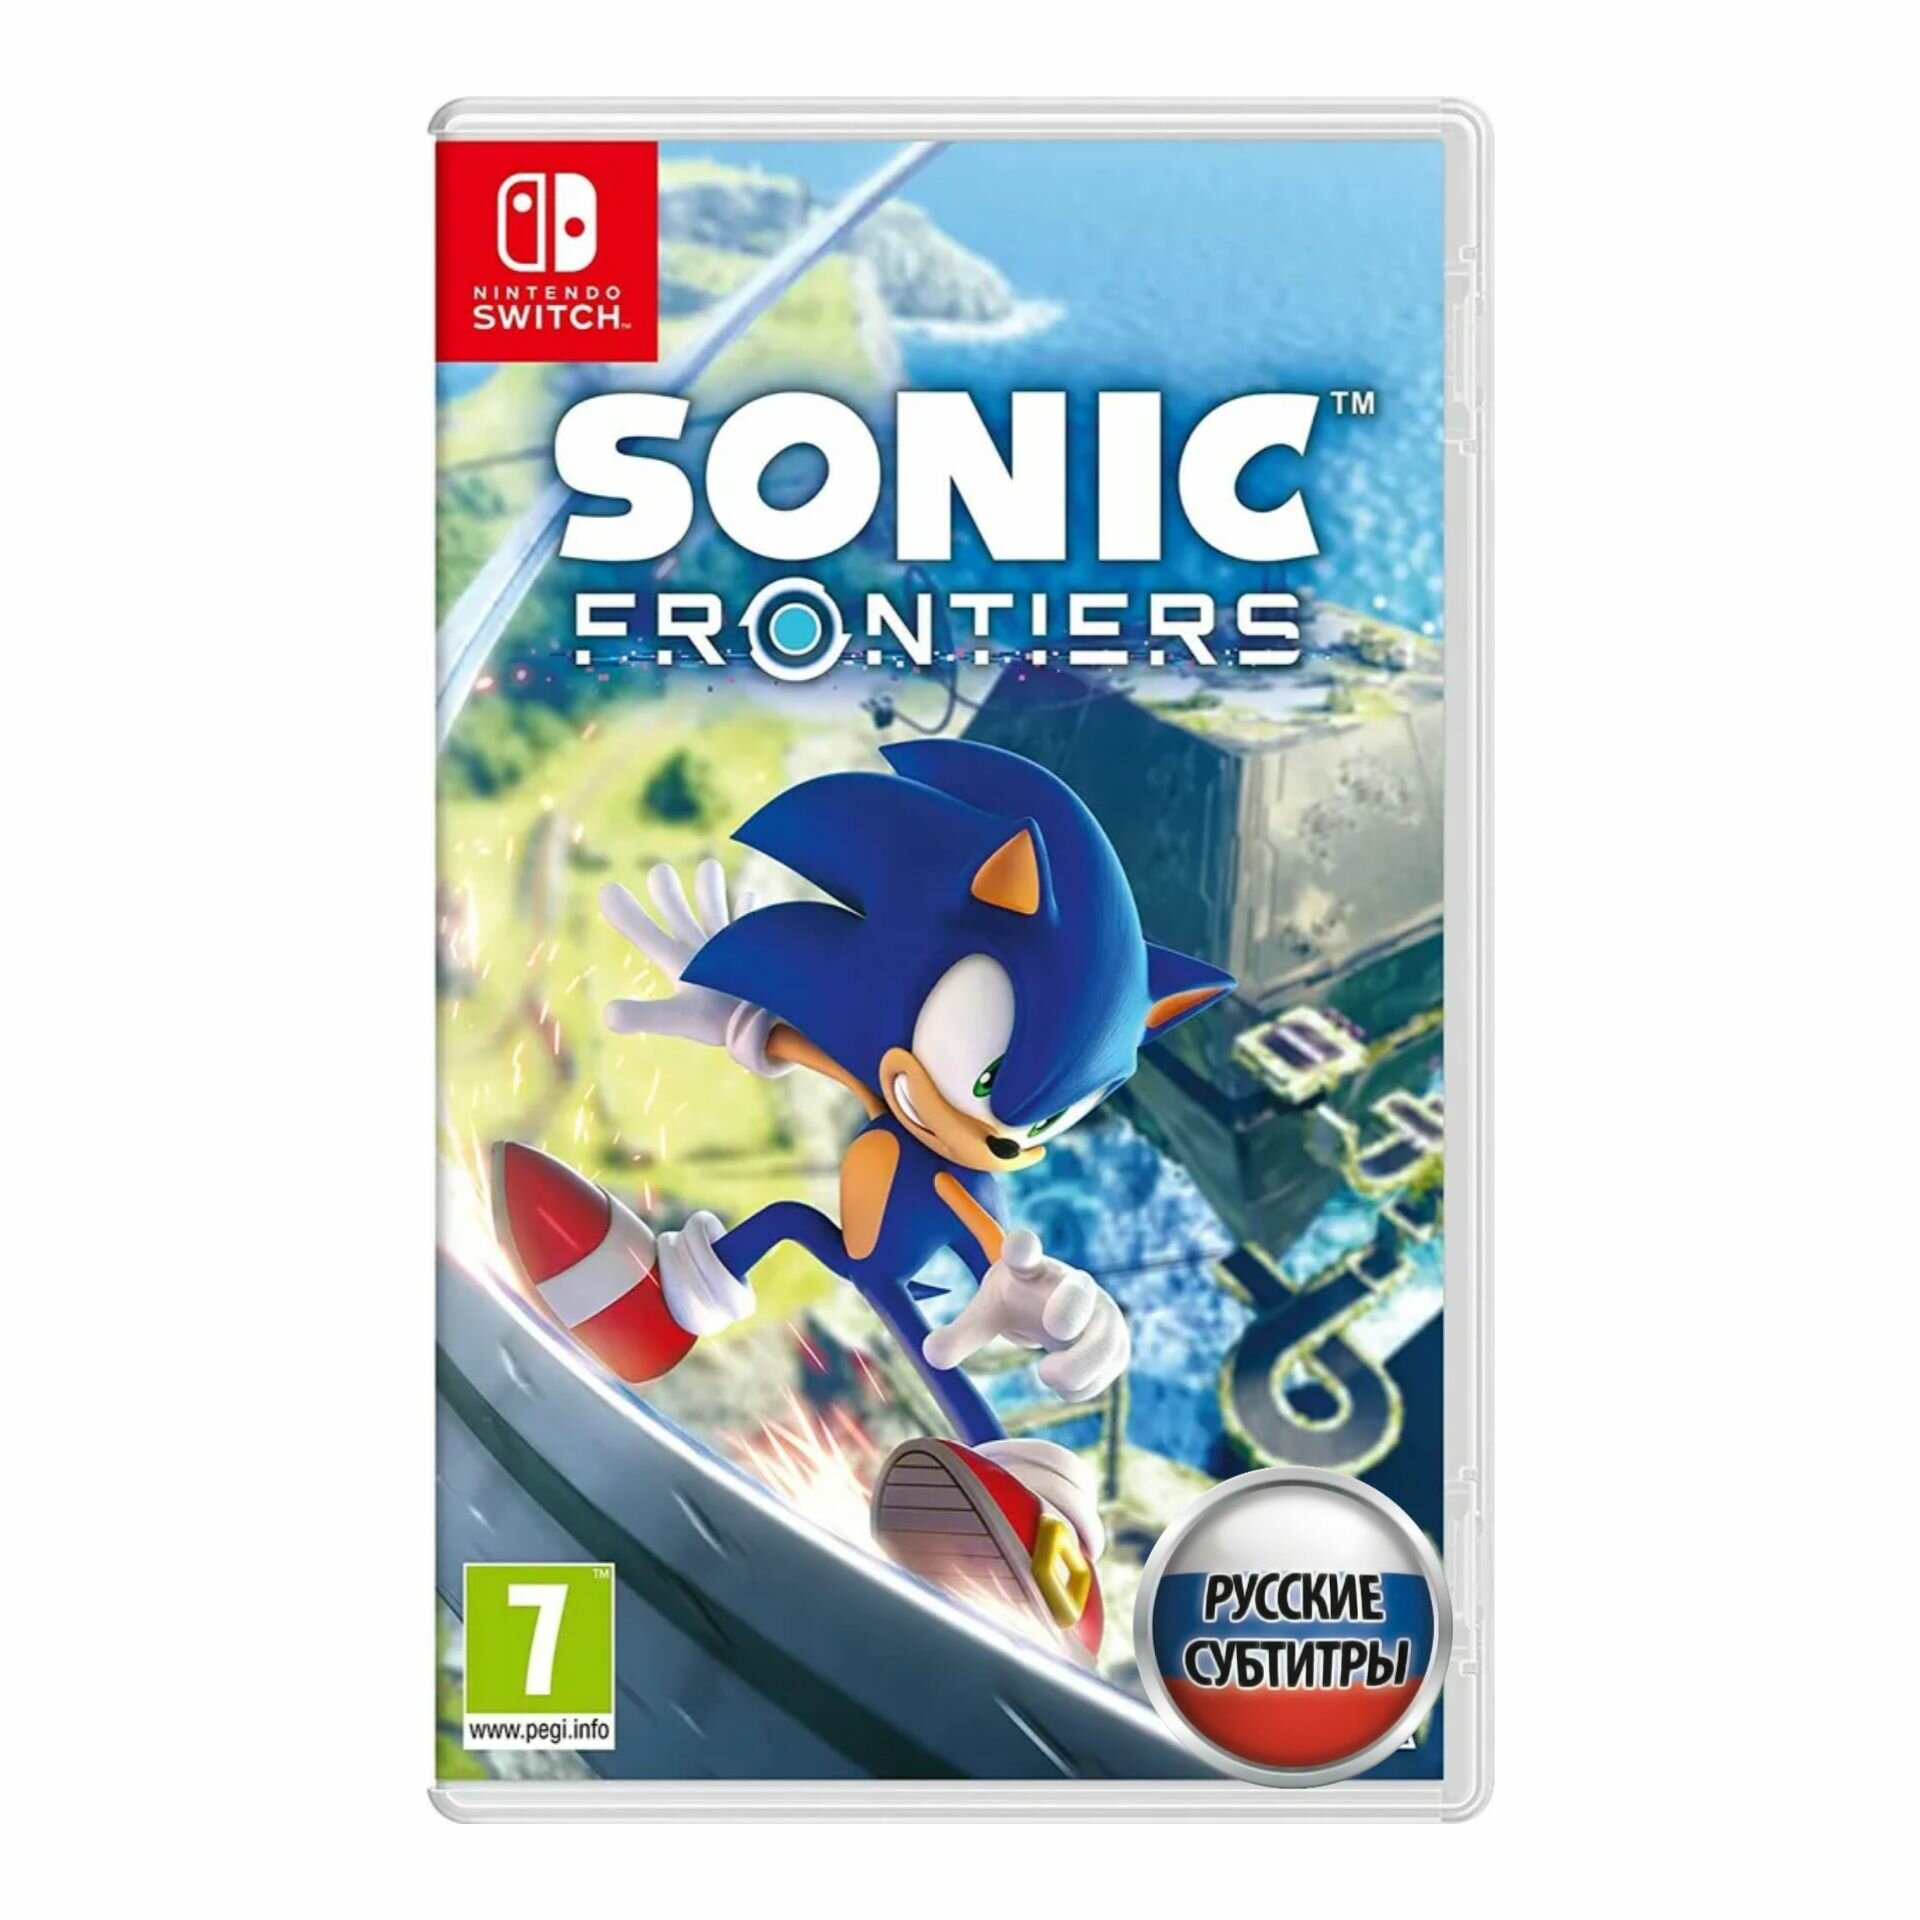 Игра Sonic Frontiers (Nintendo Switch Русские субтитры)